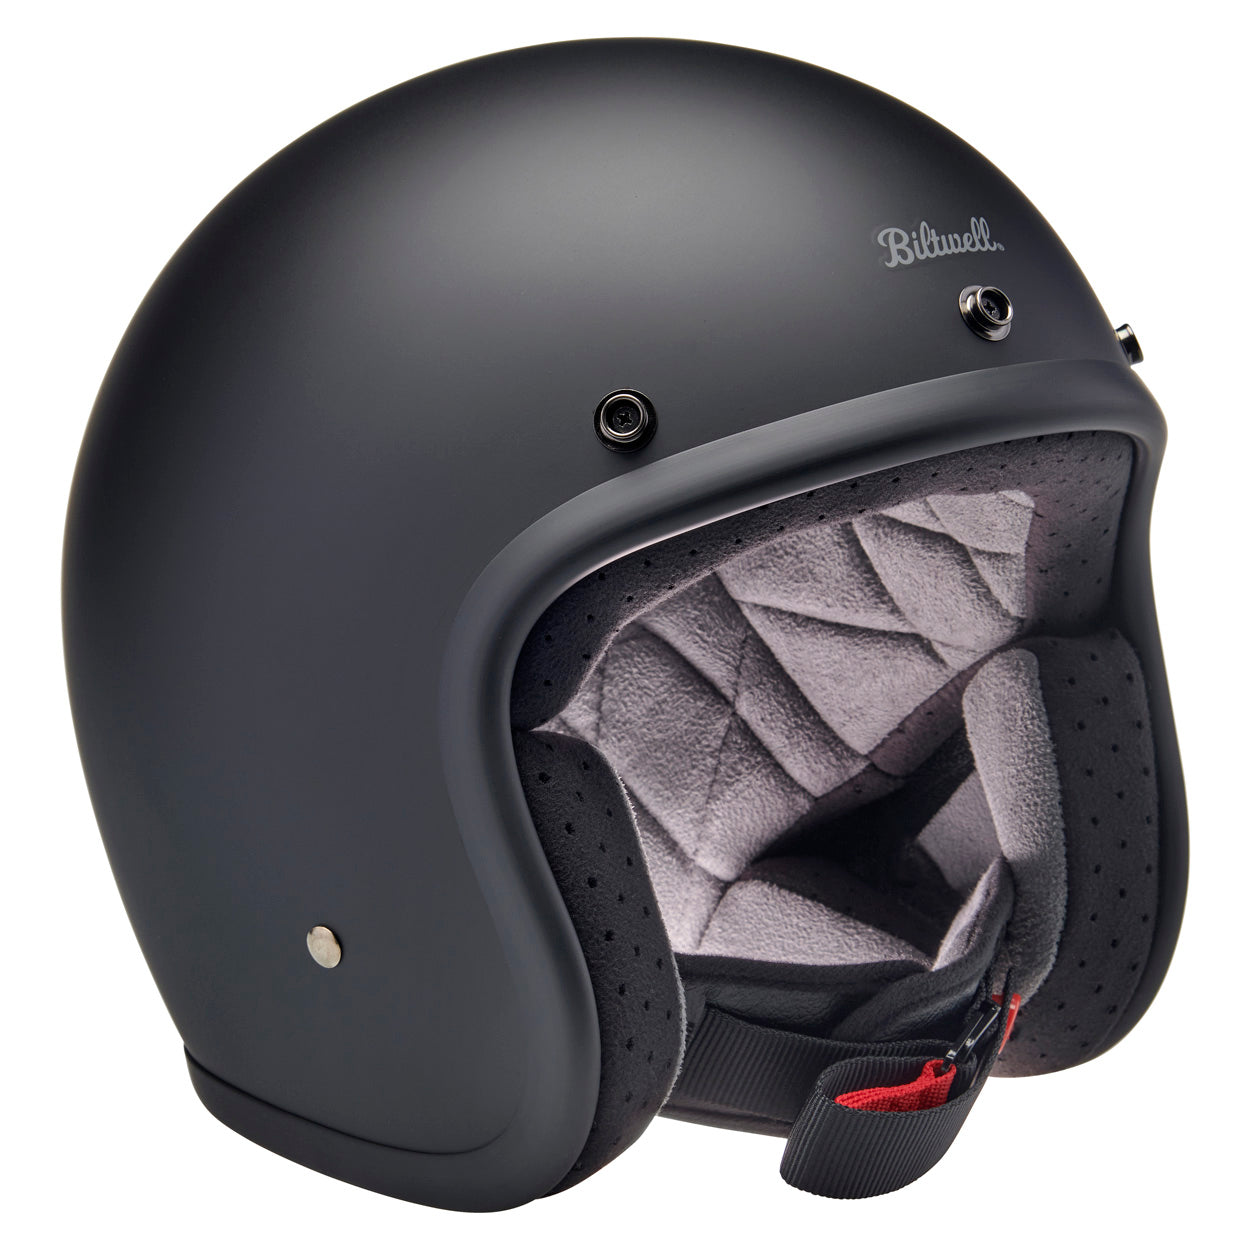 Bonanza Helmet - Flat Black